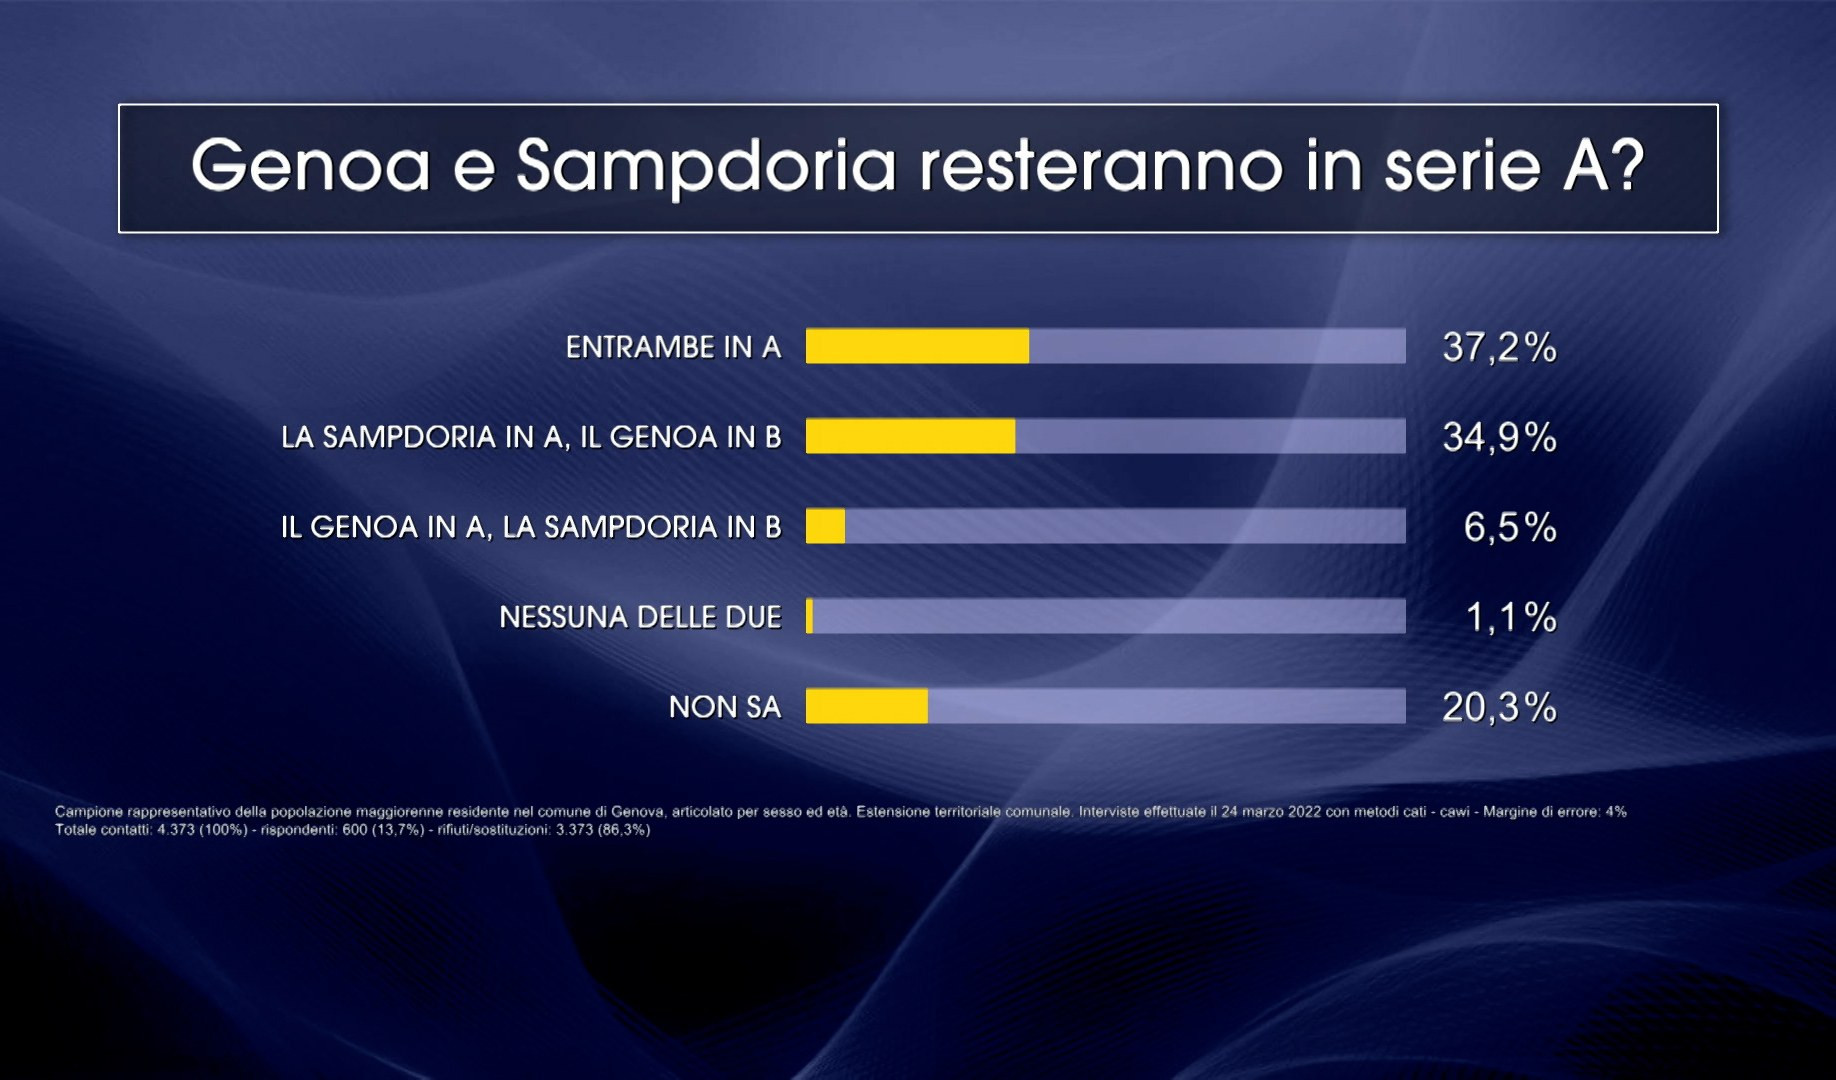 La Samp si salva, il Genoa forse: il sondaggio Primocanale-Tecné